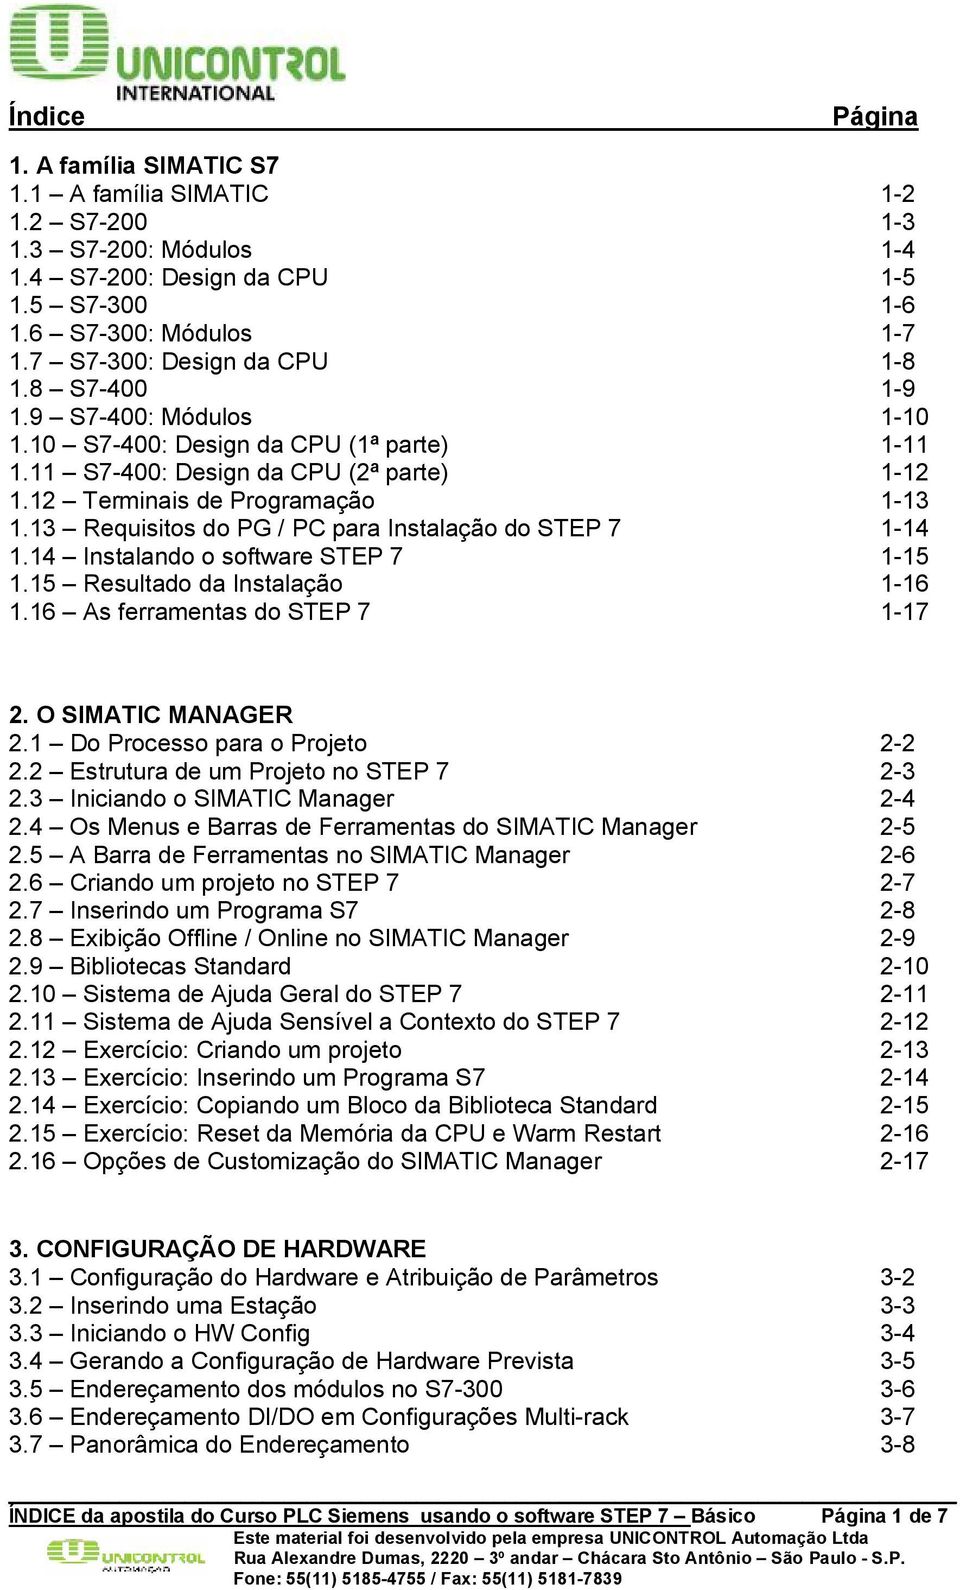 13 Requisitos do PG / PC para Instalação do STEP 7 1-14 1.14 Instalando o software STEP 7 1-15 1.15 Resultado da Instalação 1-16 1.16 As ferramentas do STEP 7 1-17 2. O SIMATIC MANAGER 2.